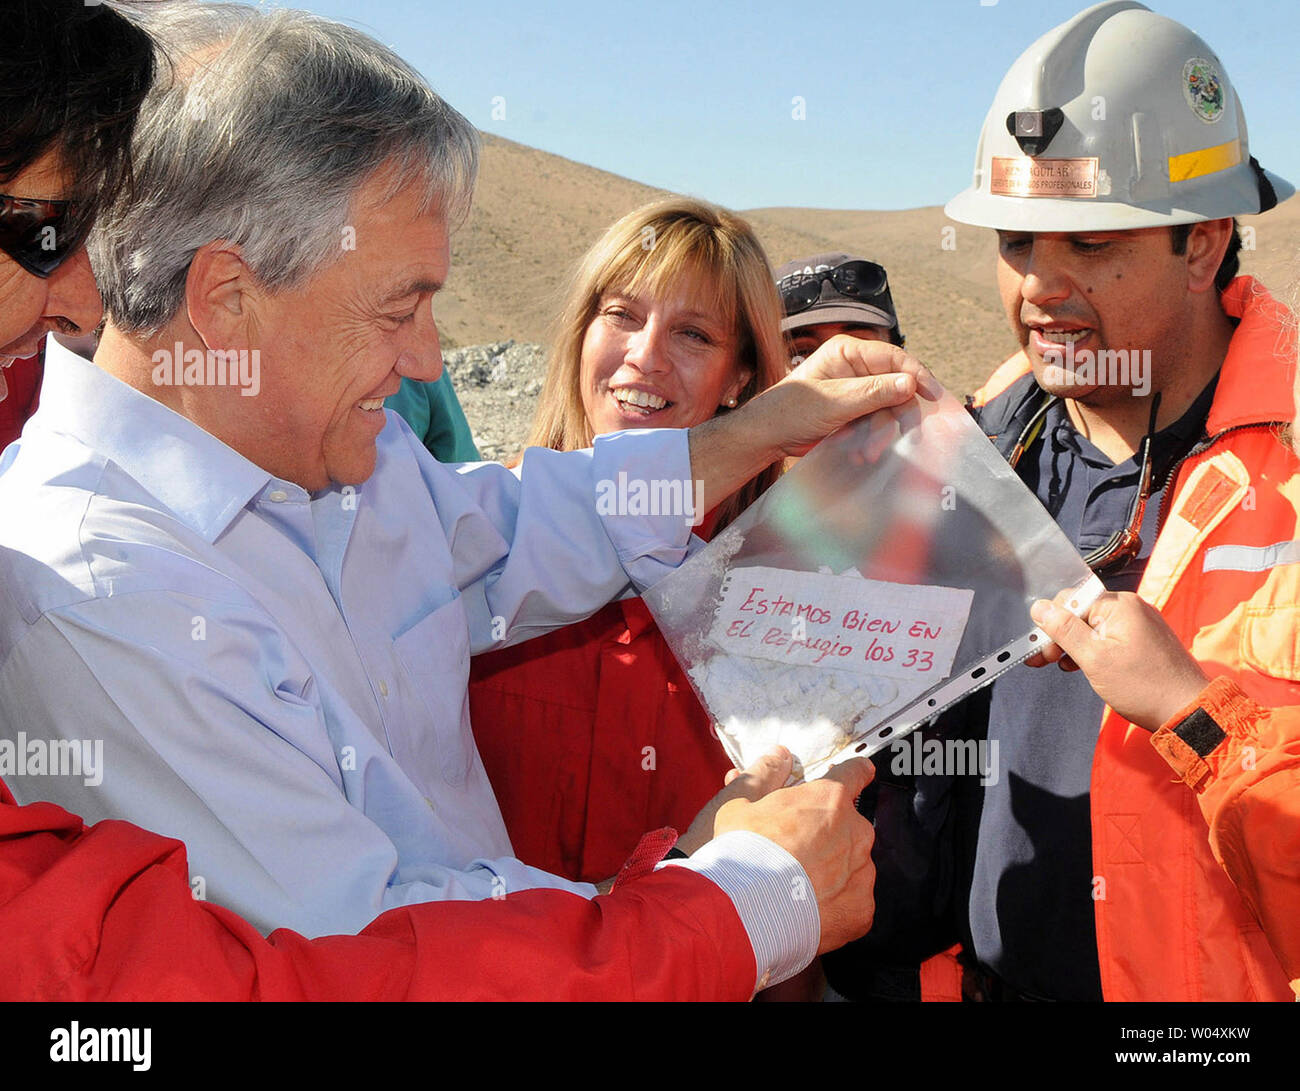 Président du Chili Sebastian Pinera est titulaire d'une note de mineurs piégés dans une mine effondrée à Santiago, Chili, le 22 août 2010. La note indique les mineurs, 33 d'entre eux, sont OK dans un refuge. Emprisonné depuis le 5 août, cela peut prendre plusieurs mois pour les libérer. UPI Banque D'Images